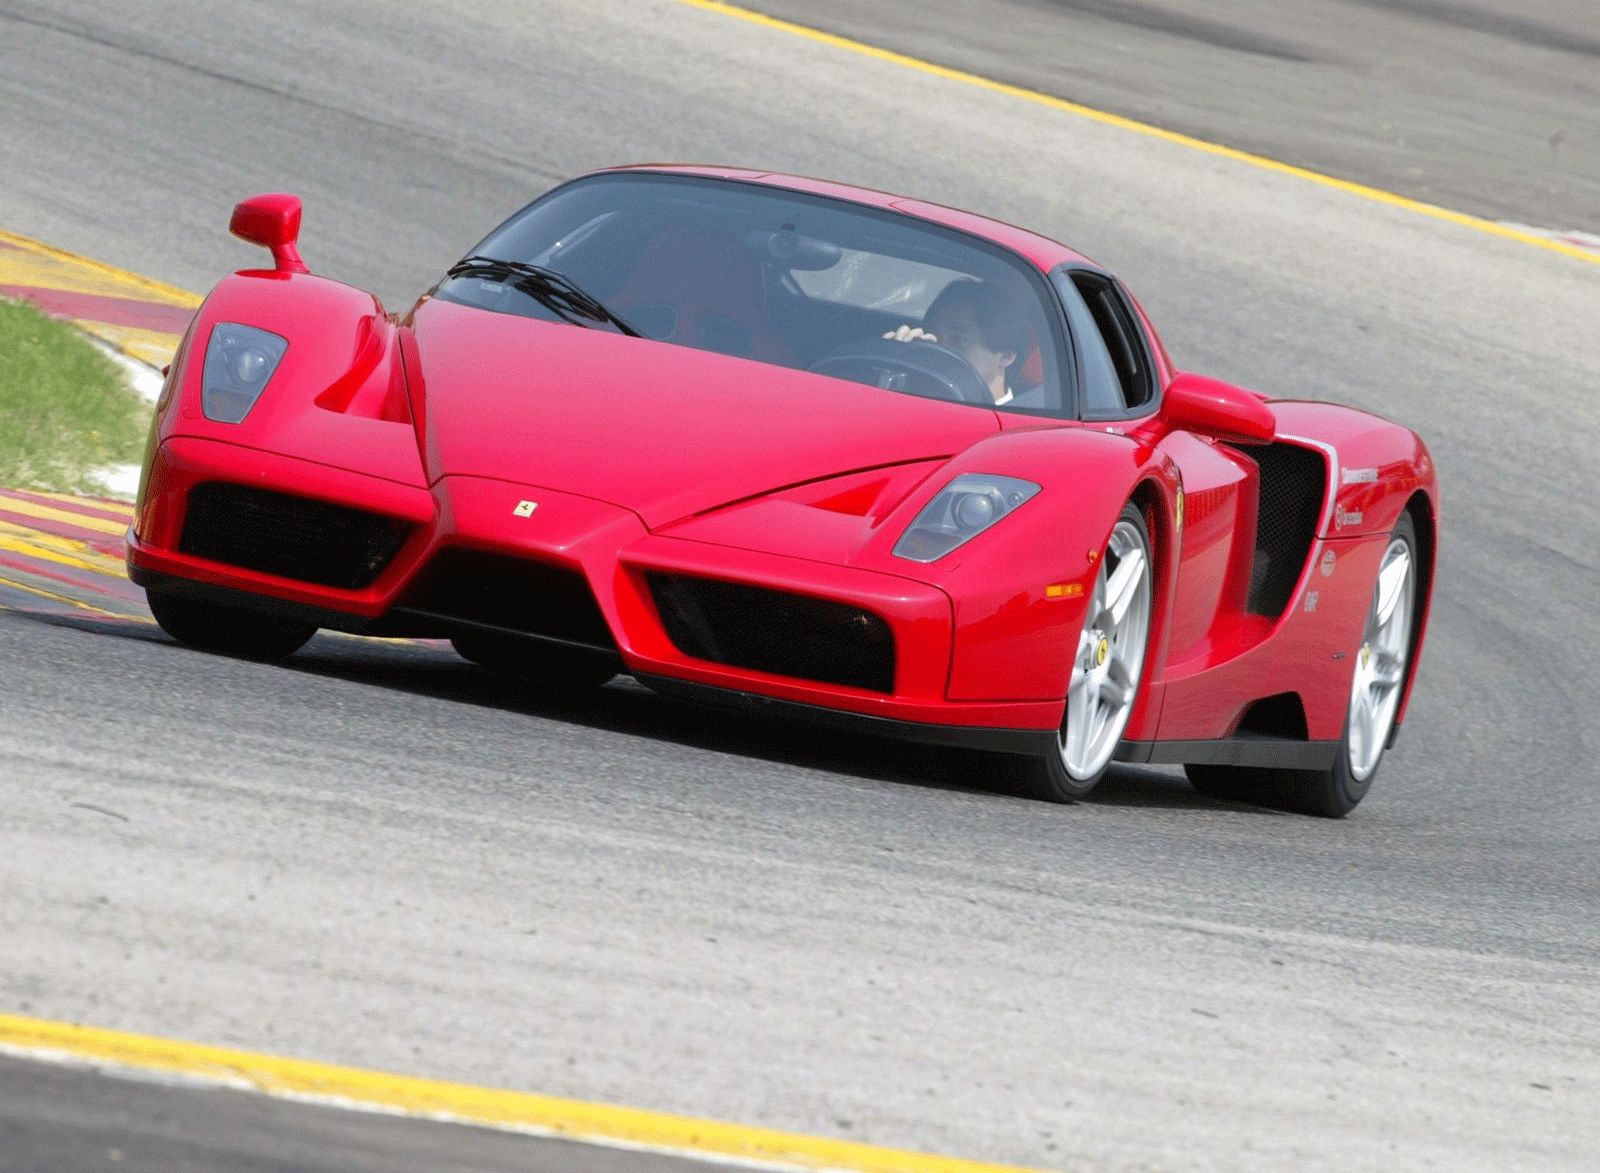 http://2.bp.blogspot.com/-x7d1Yx97Gj4/TqLkkF-9SQI/AAAAAAAAAP0/yTkzr6WpIL0/s1600/Ferrari+Enzo+Automotive+Cars+%252813%2529.gif